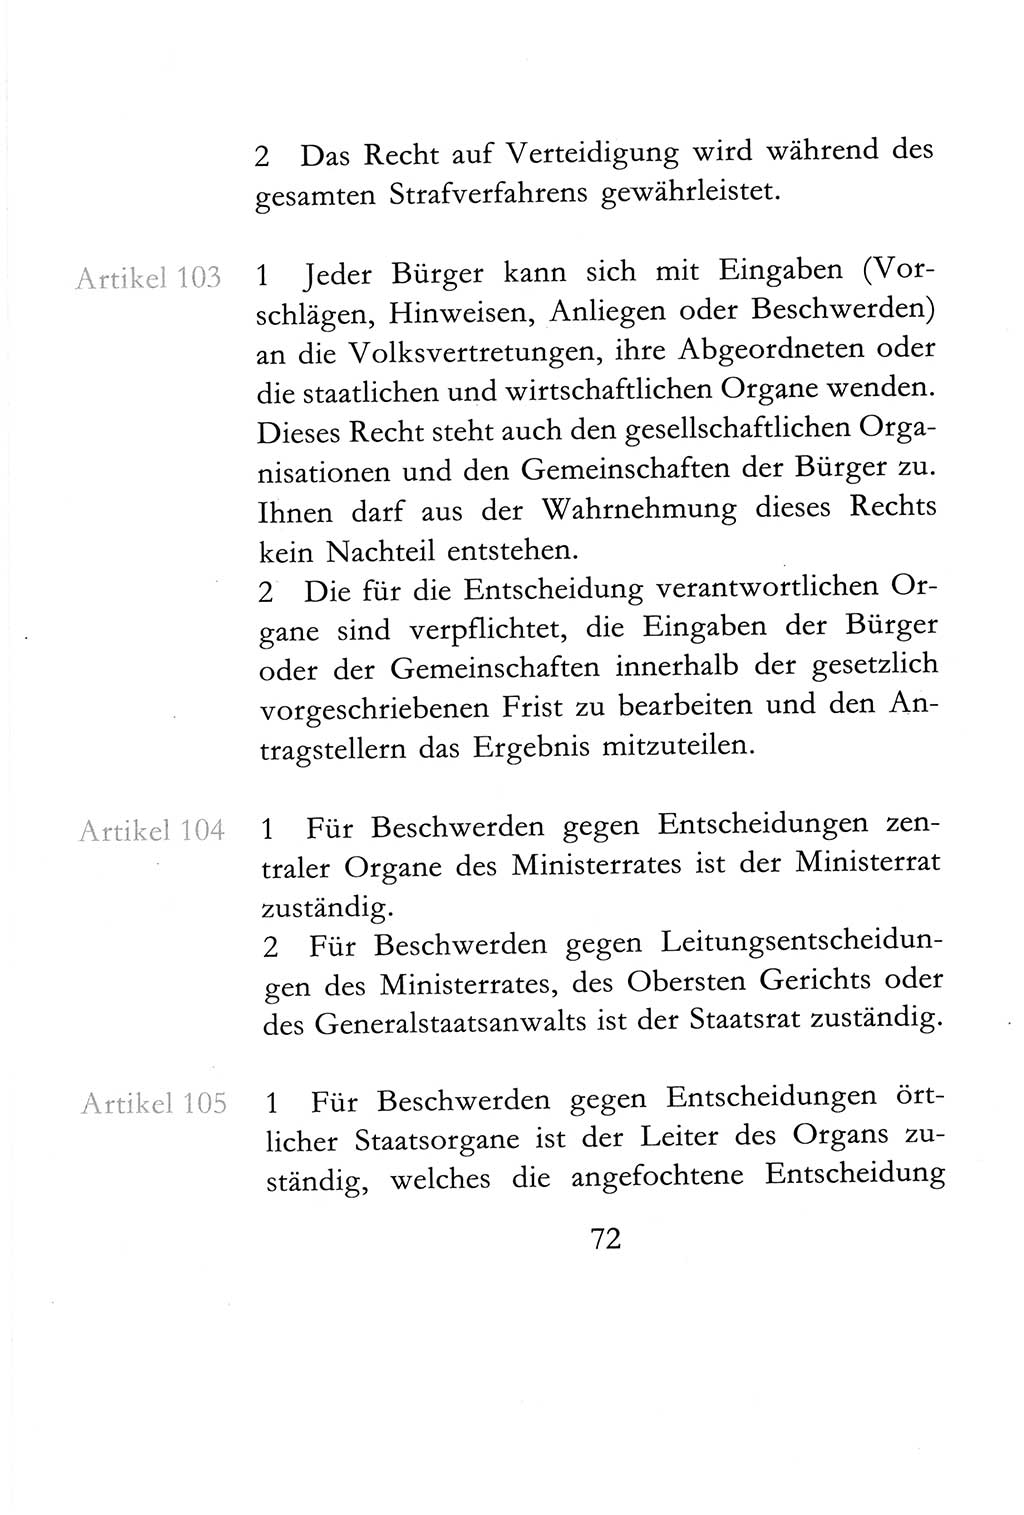 Verfassung der Deutschen Demokratischen Republik (DDR) vom 6. April 1968, Seite 72 (Verf. DDR 1968, S. 72)